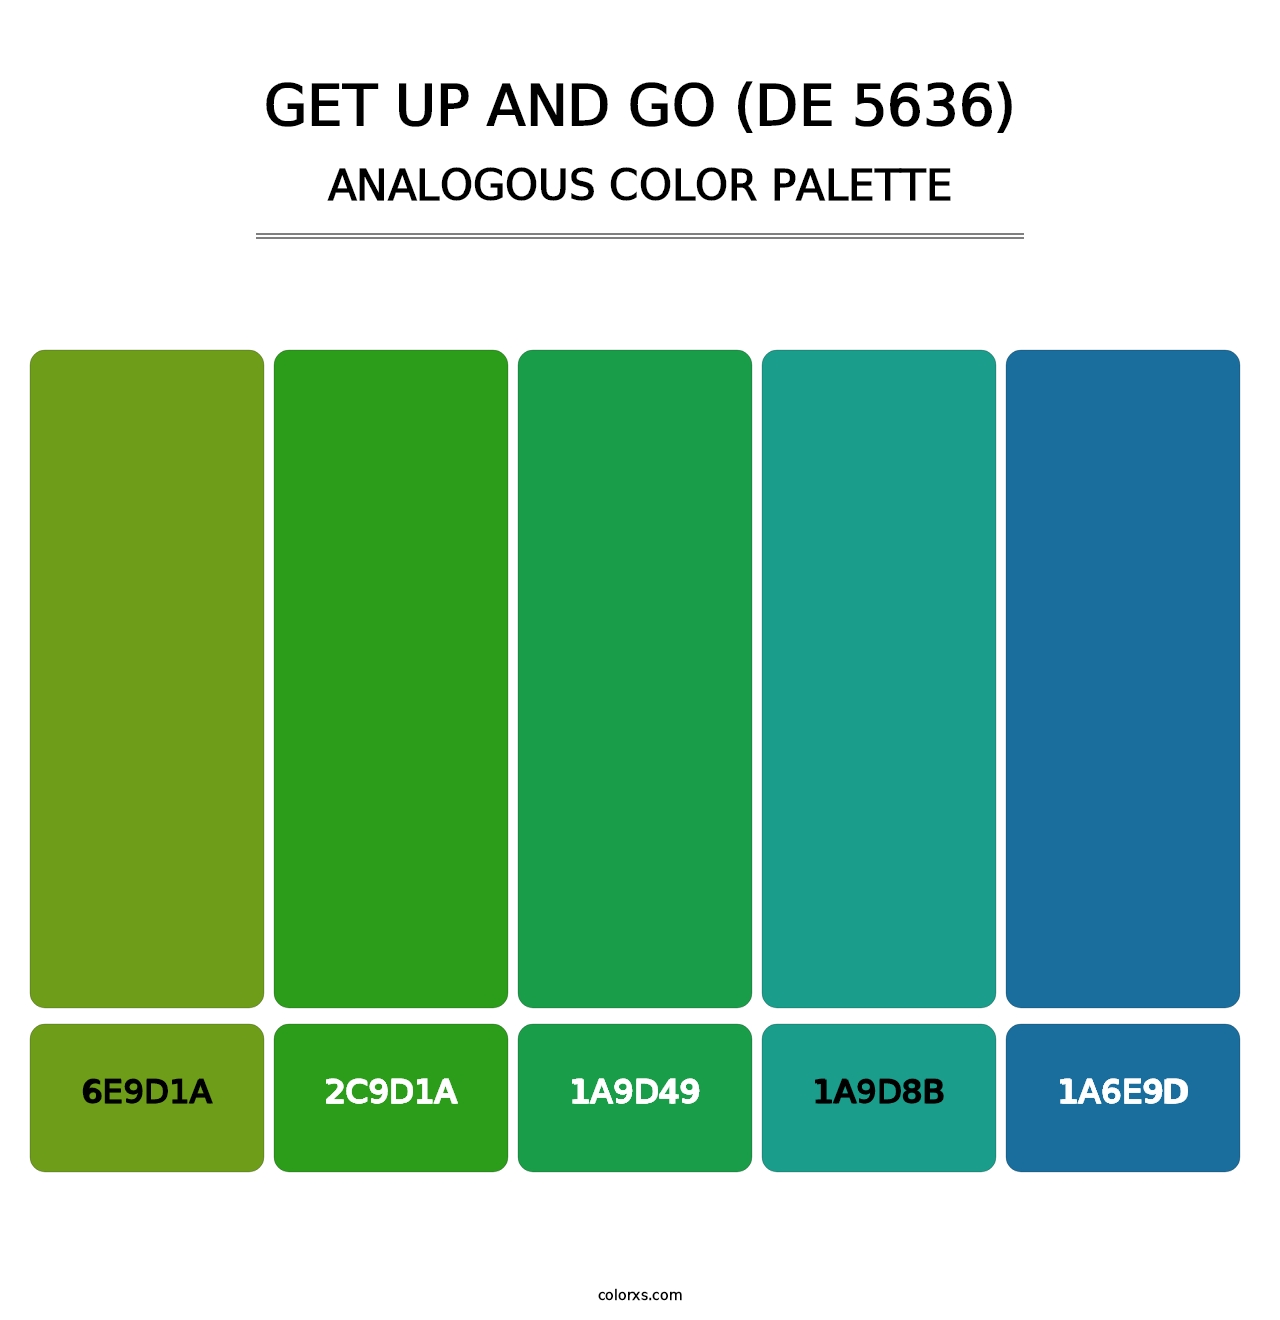 Get Up and Go (DE 5636) - Analogous Color Palette